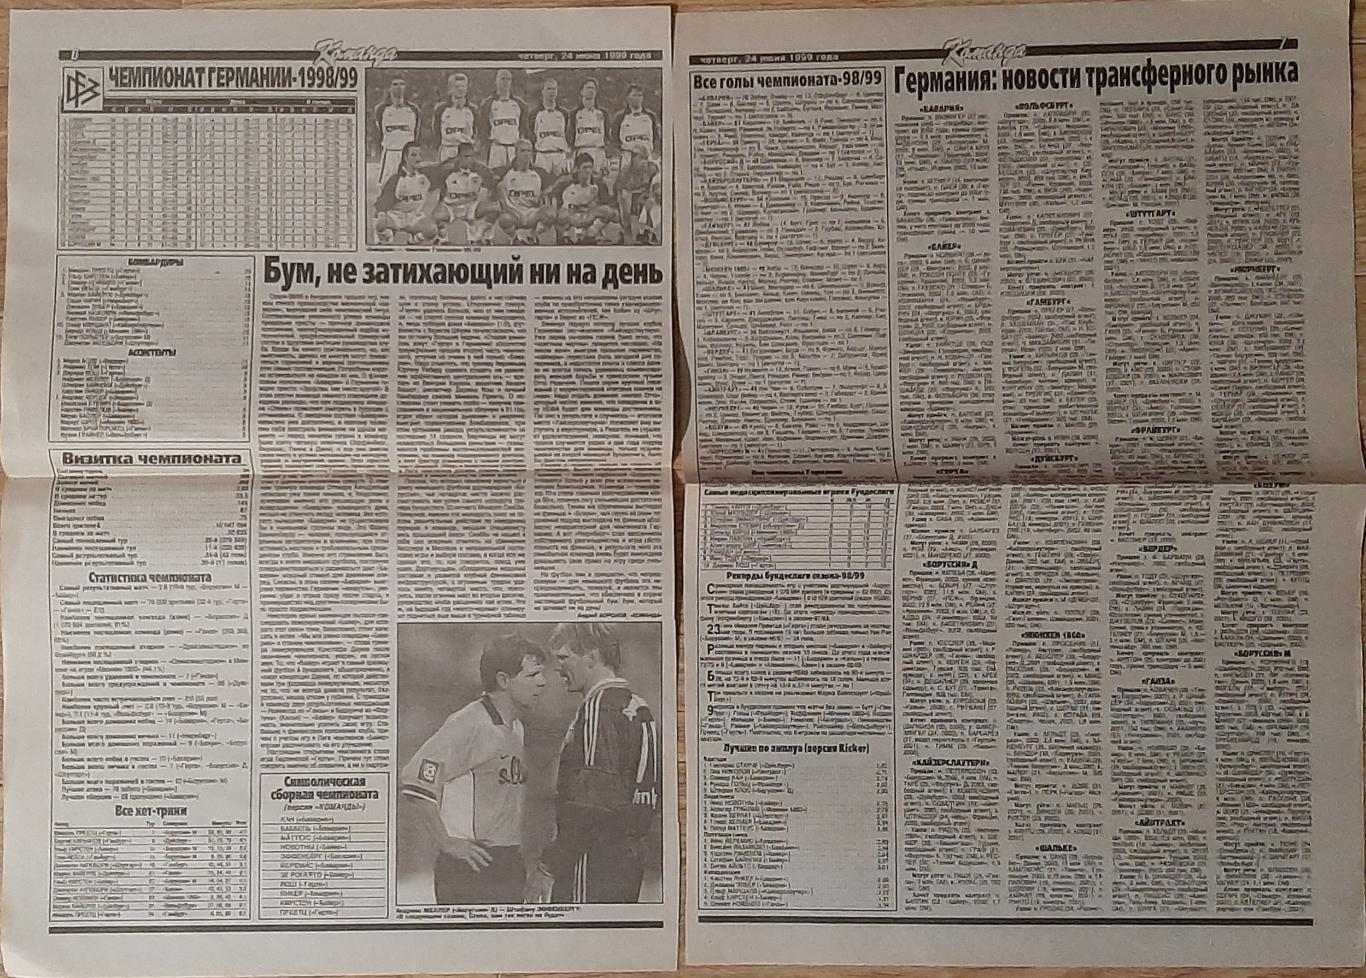 Вирізка з газети Команда (24.06.1999) Бундесліга - підсумки сезону 1998/99